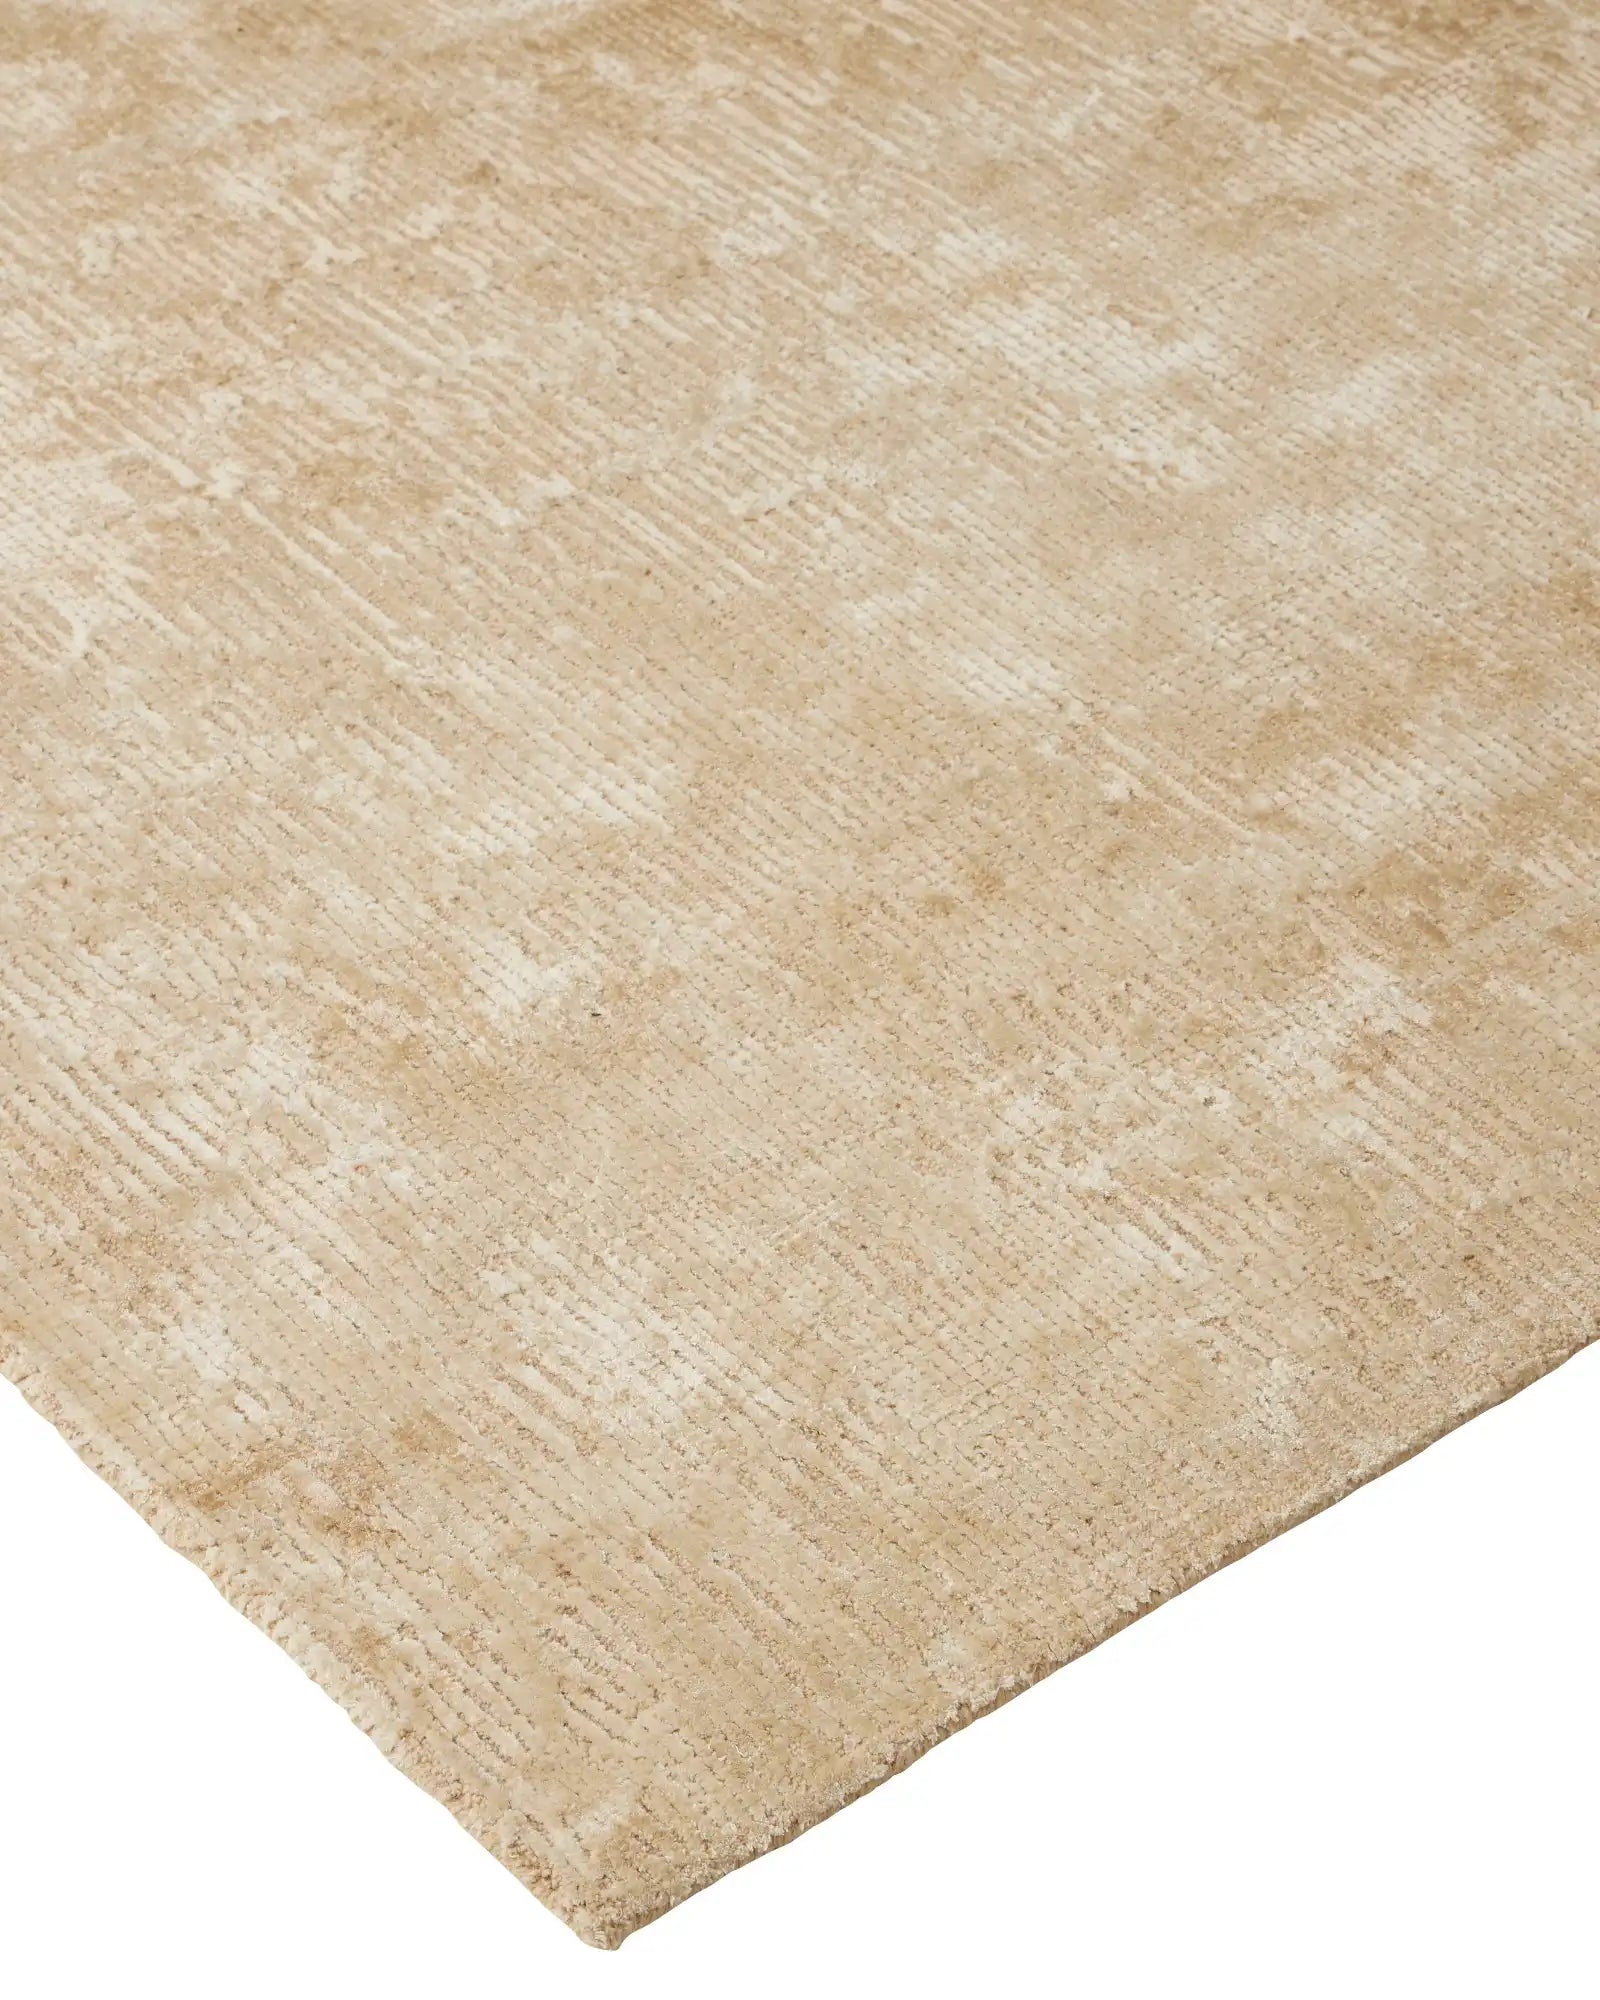 Weave Glebe Floor Rug - Oat RGB02OATT